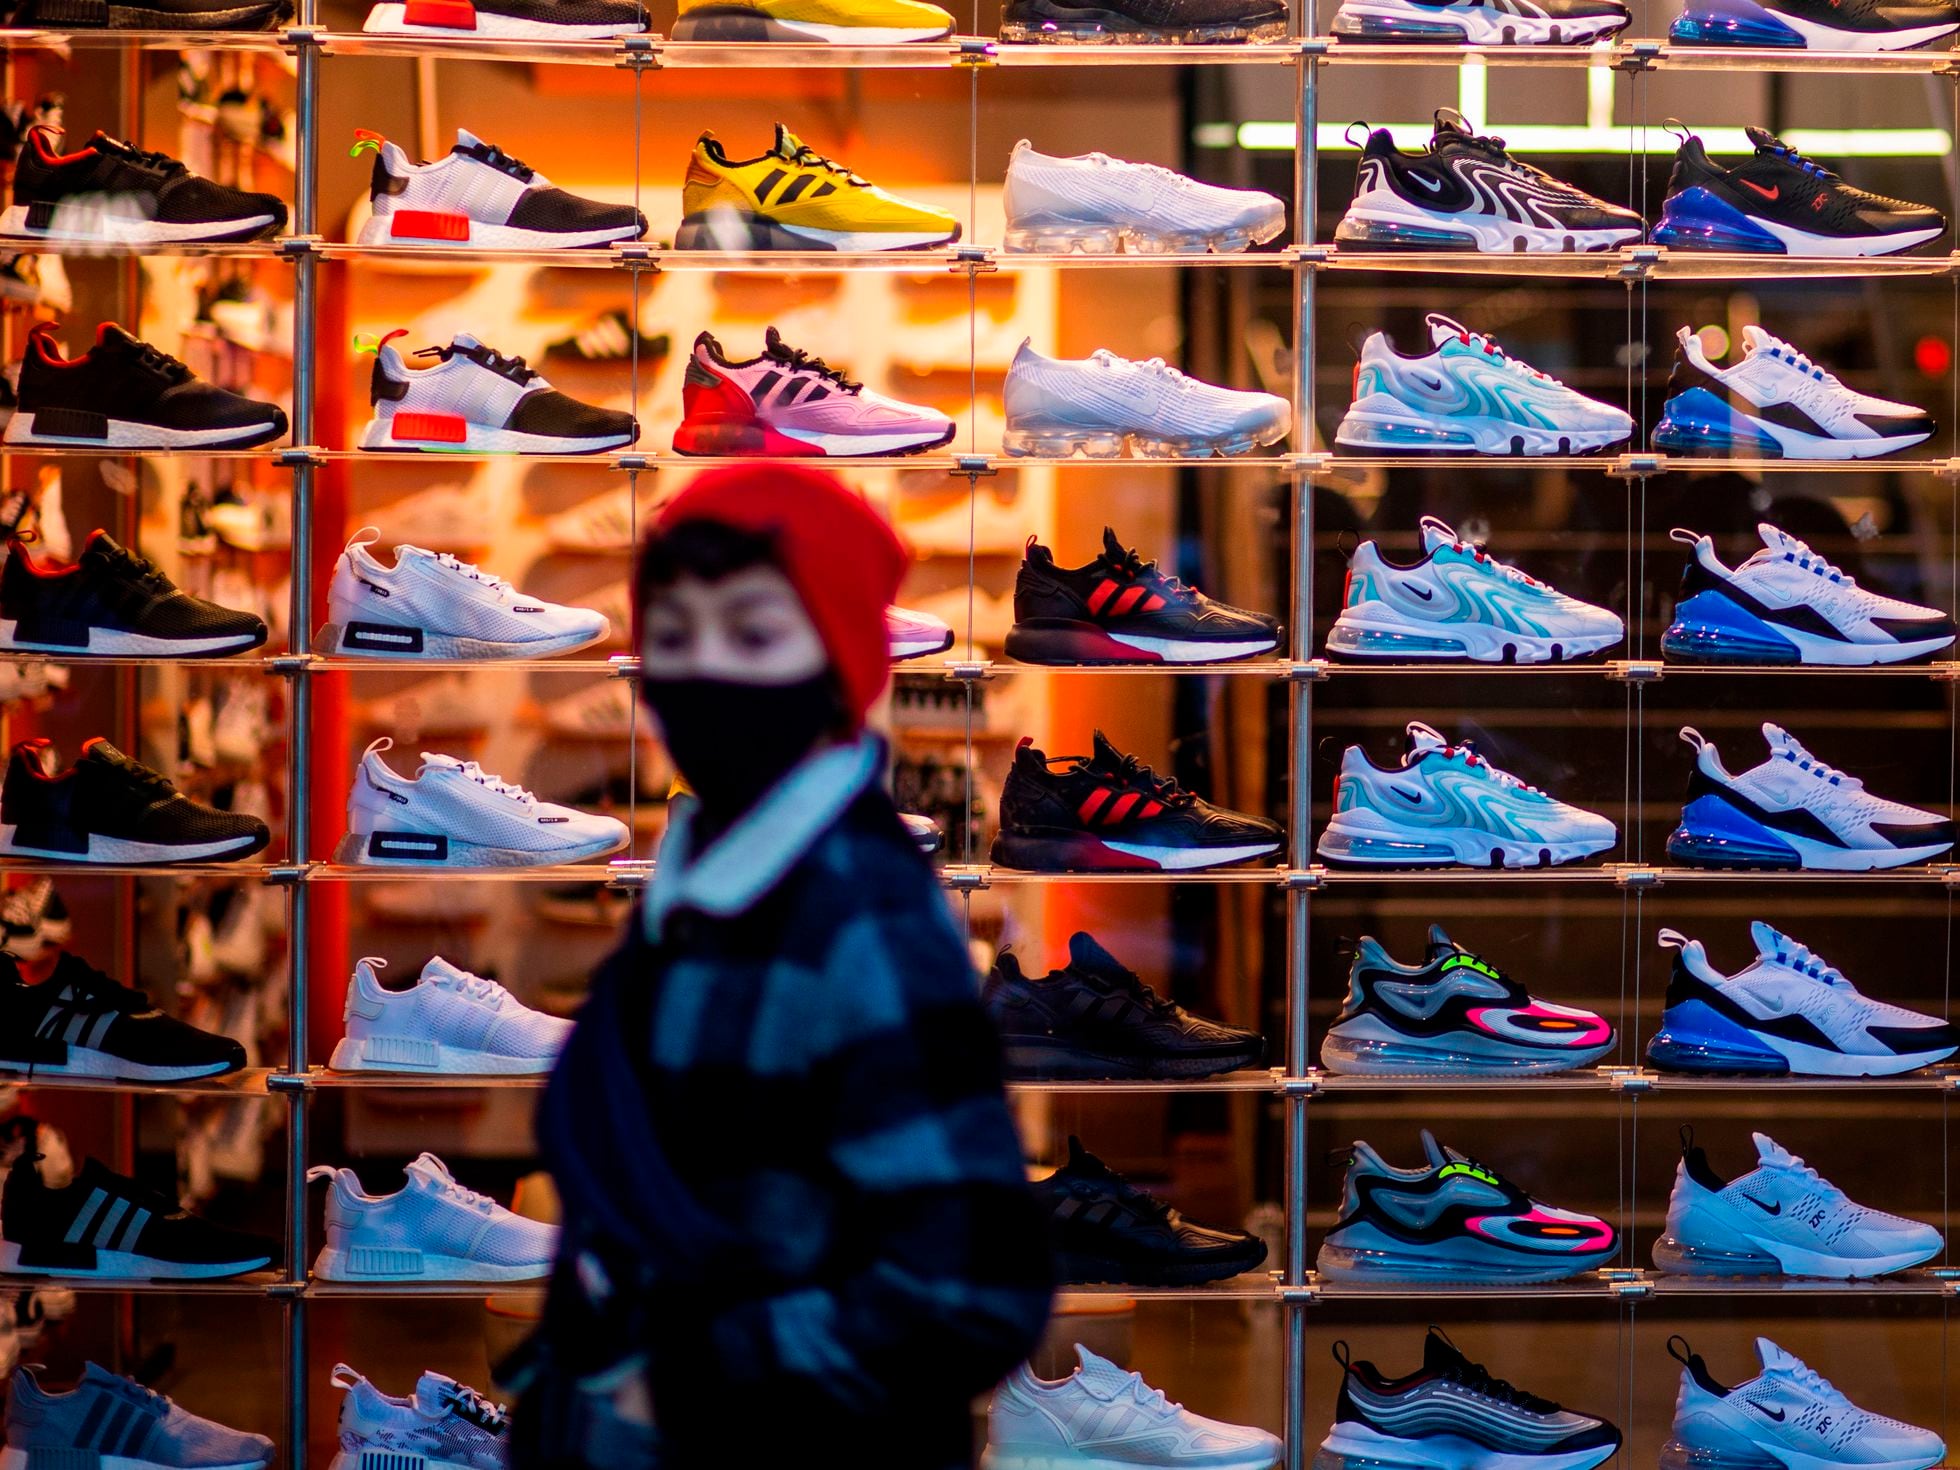 Sneakers': Las zapatillas se convierten en un activo de inversión muchos jóvenes | Negocios | EL PAÍS